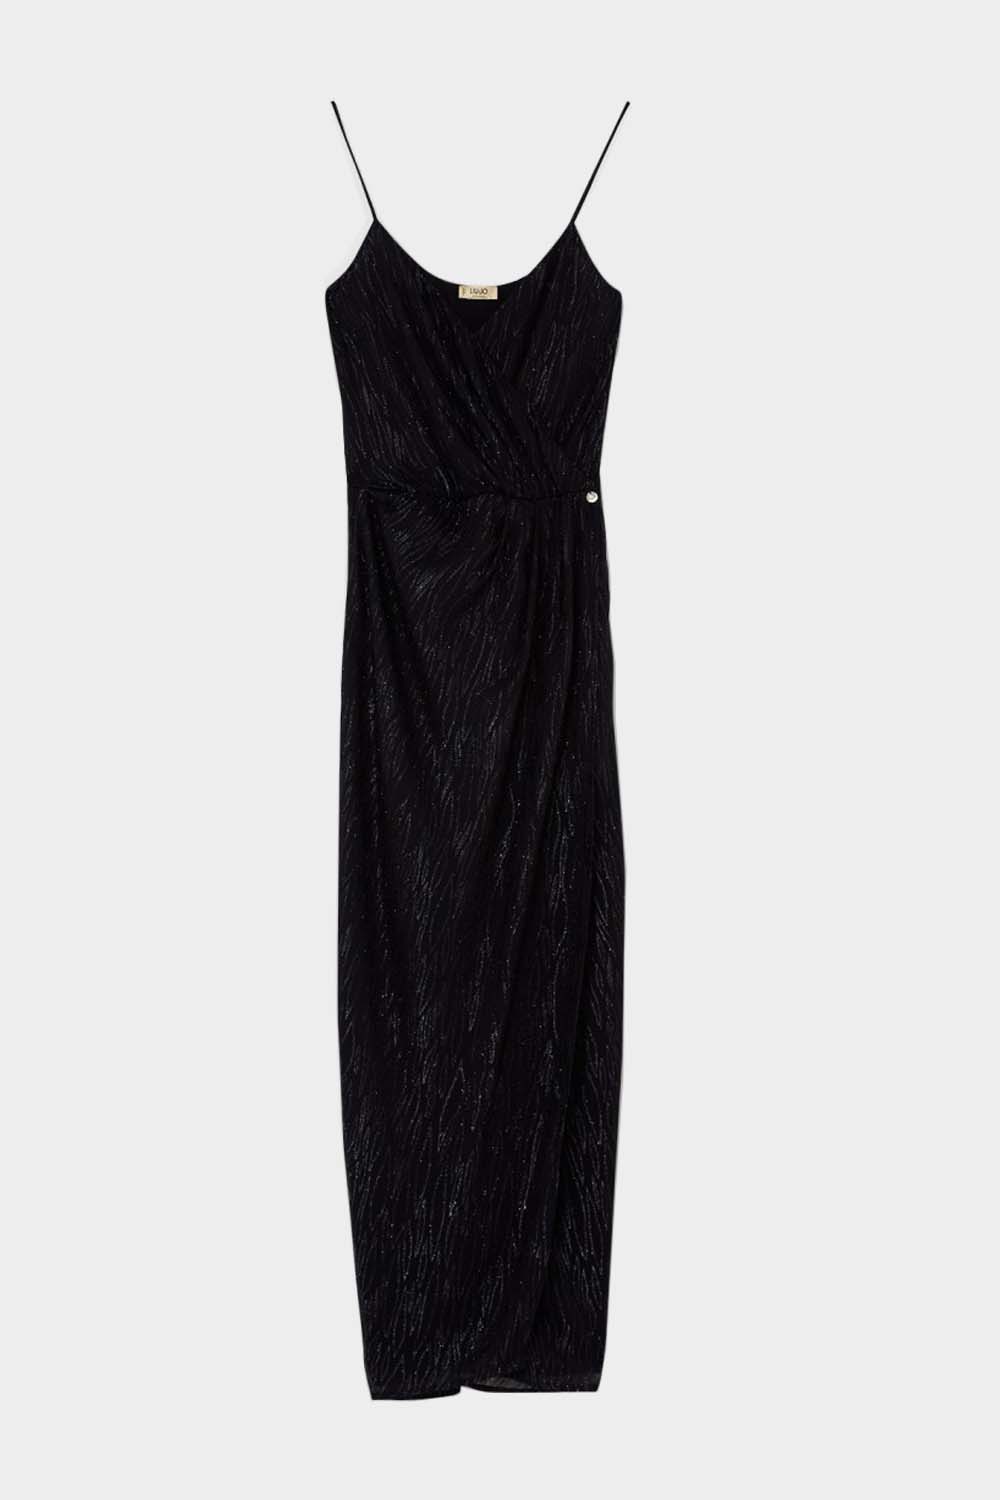 שמלת שסע לנשים כתפיות דקות LIU JO Vendome online | ונדום .